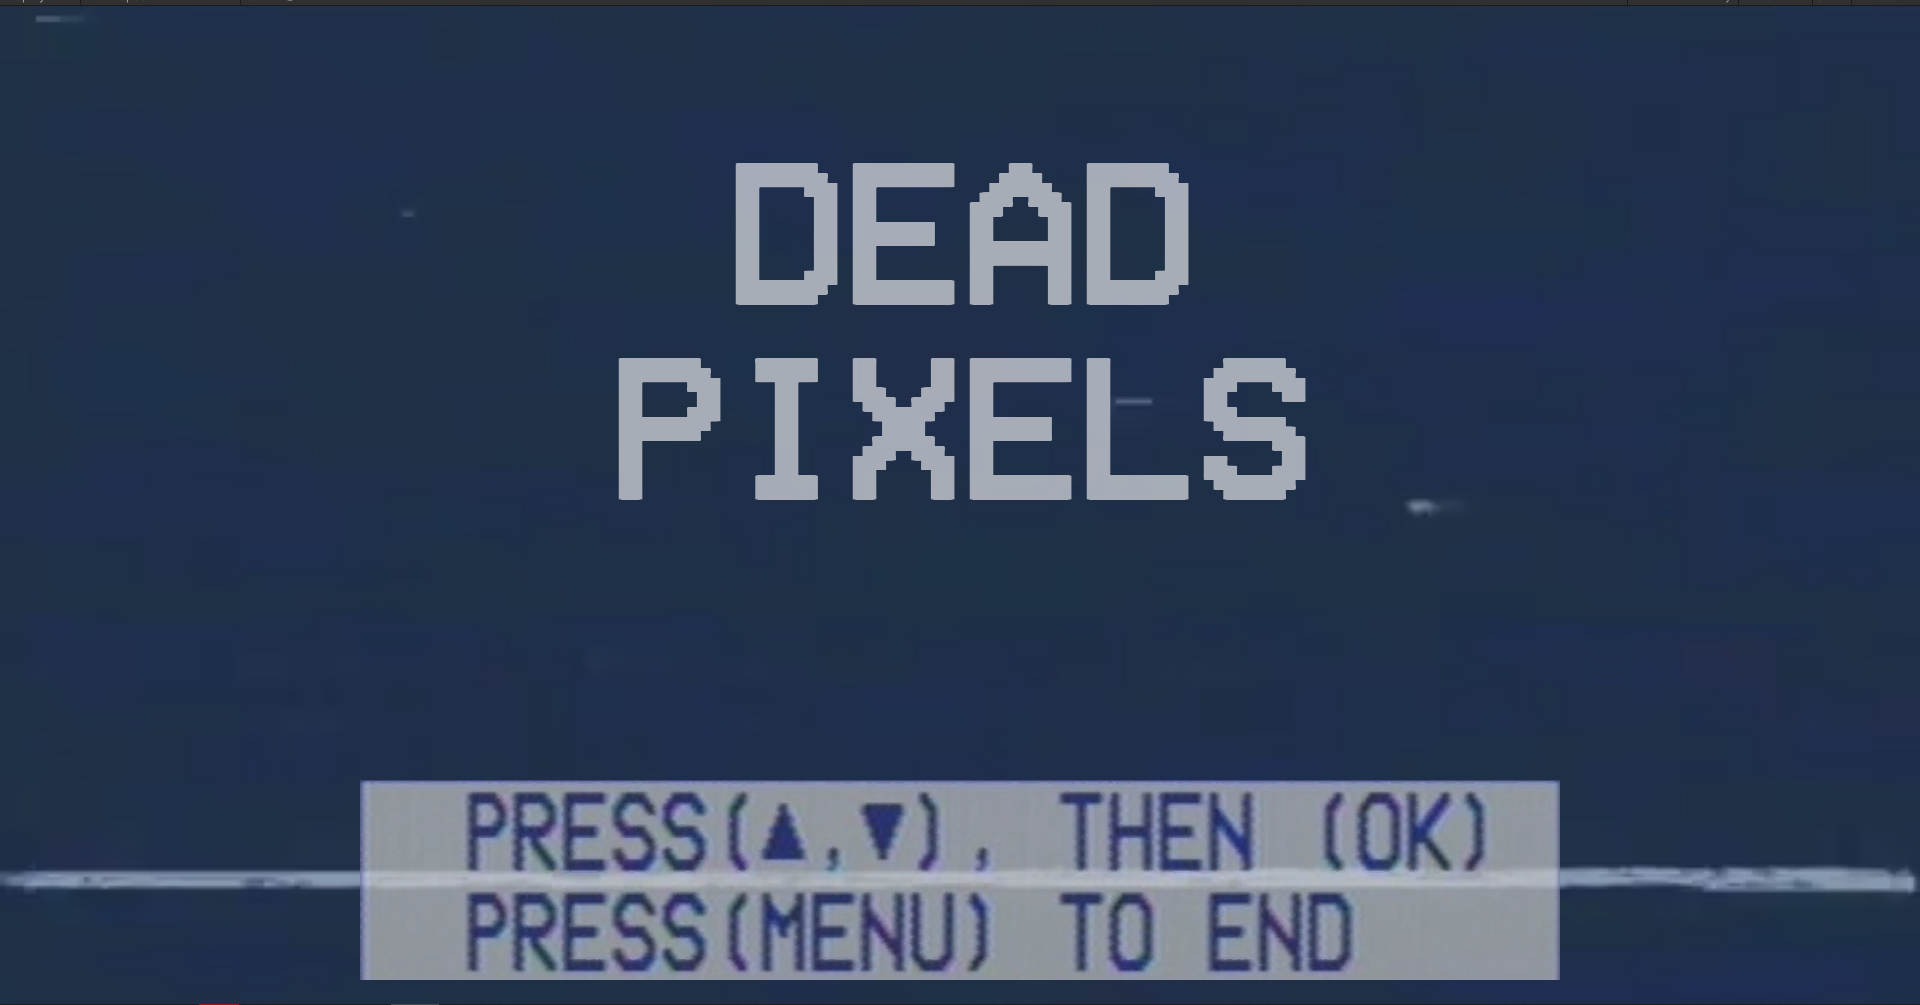 Dead Pixels